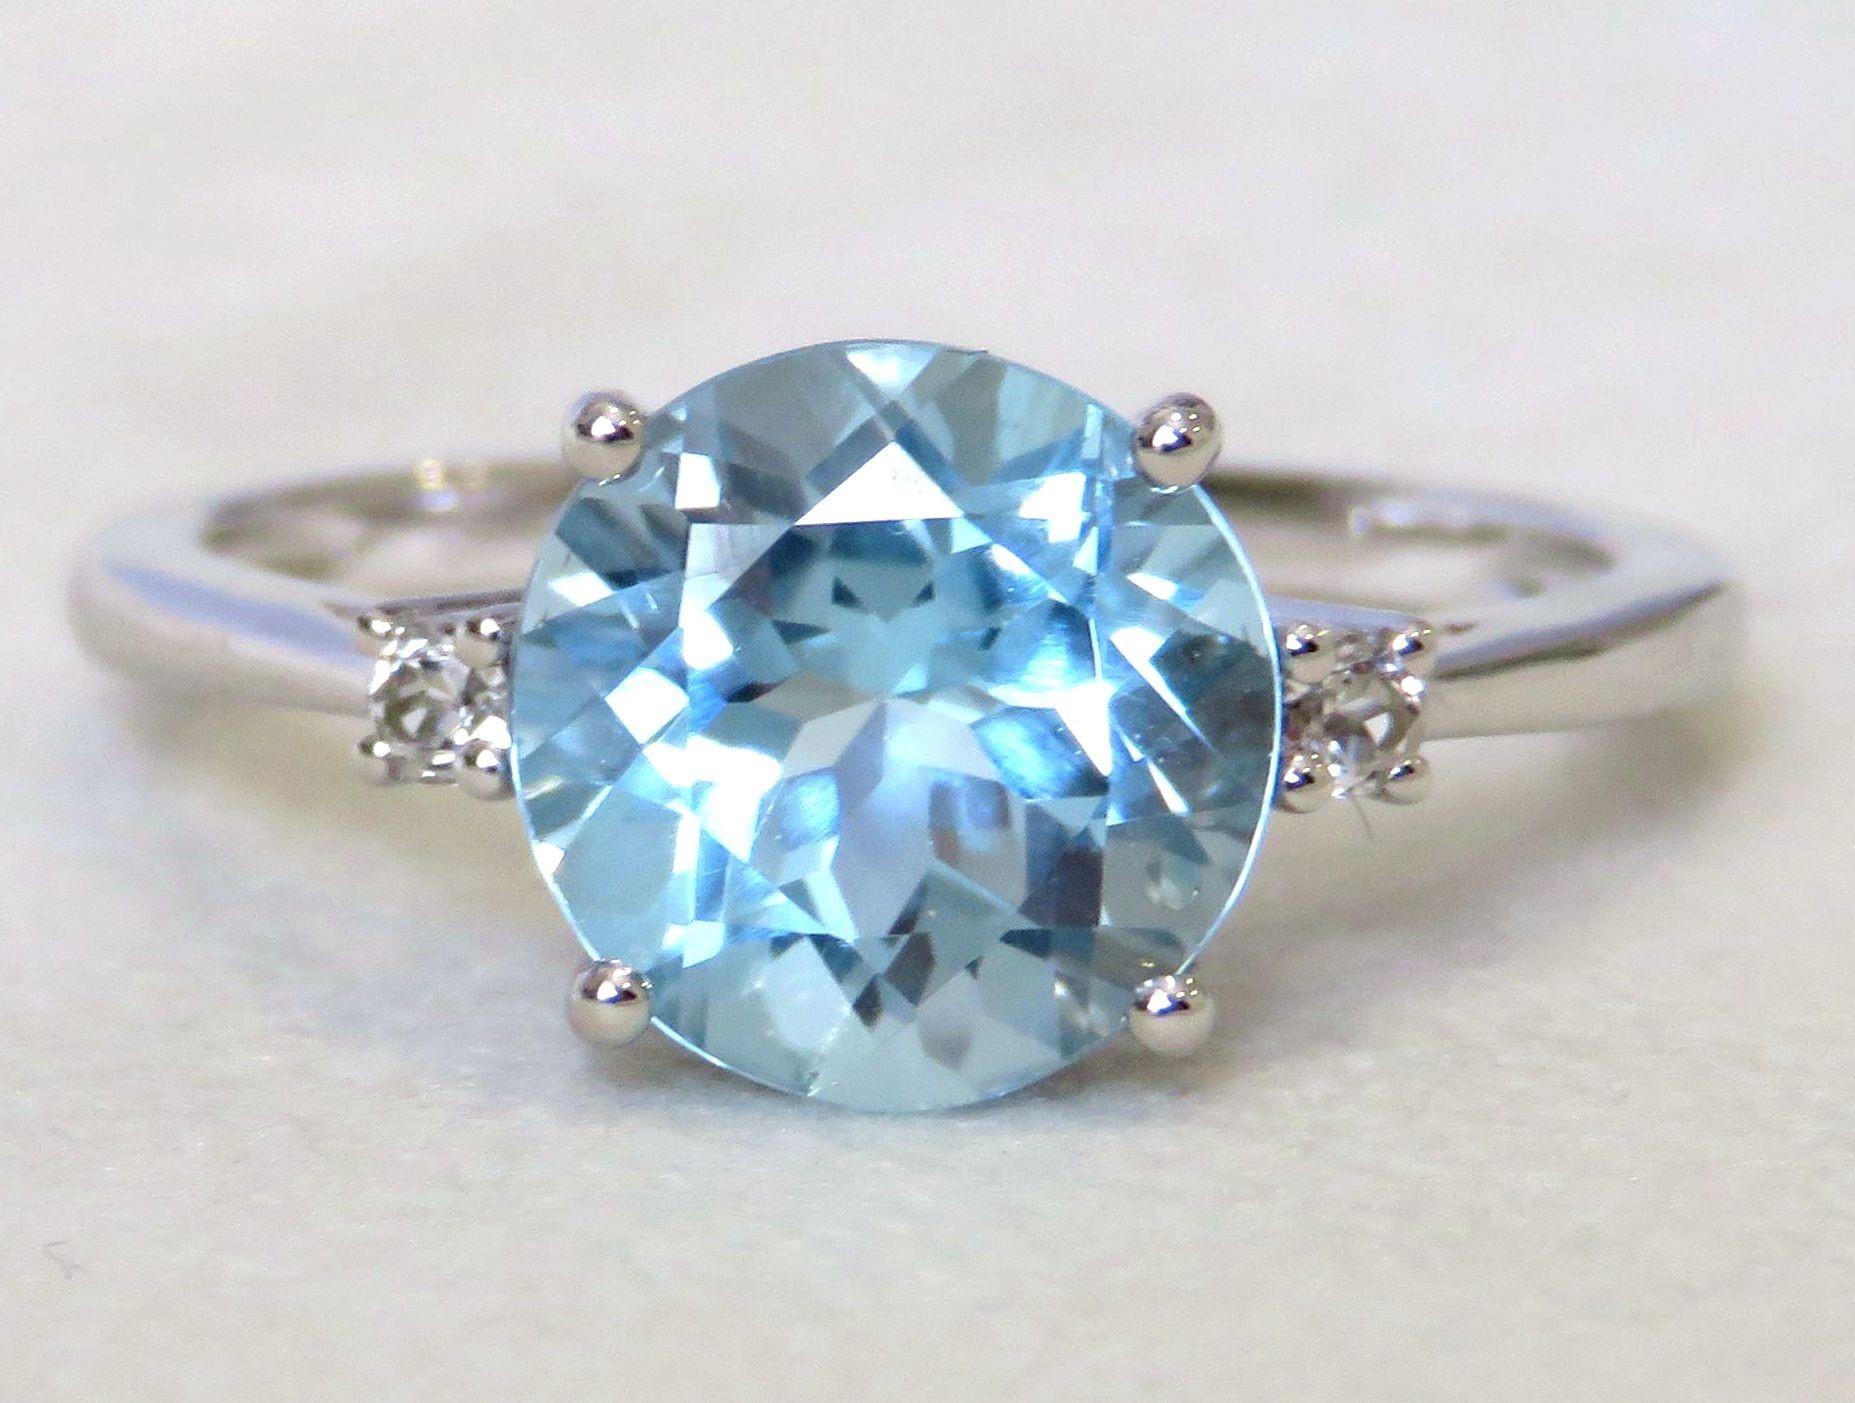 9k White Gold 3.25ct Aqua Blue Topaz & 0.4ct White Sapphire Ring